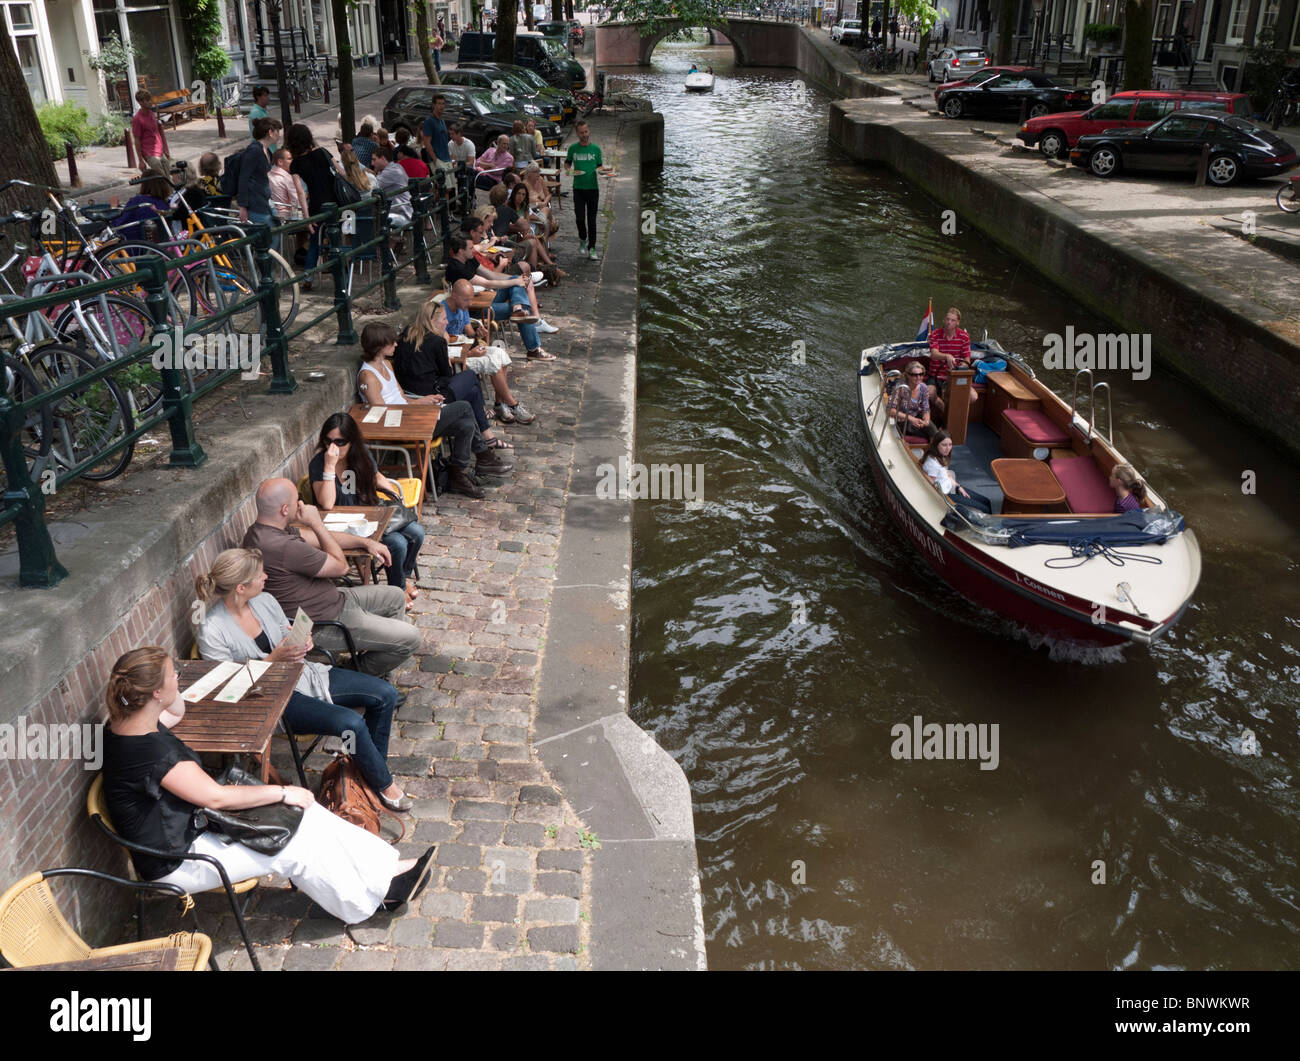 Cafe accanto al canal nel quartiere Jordaan di Amsterdam Paesi Bassi Foto Stock